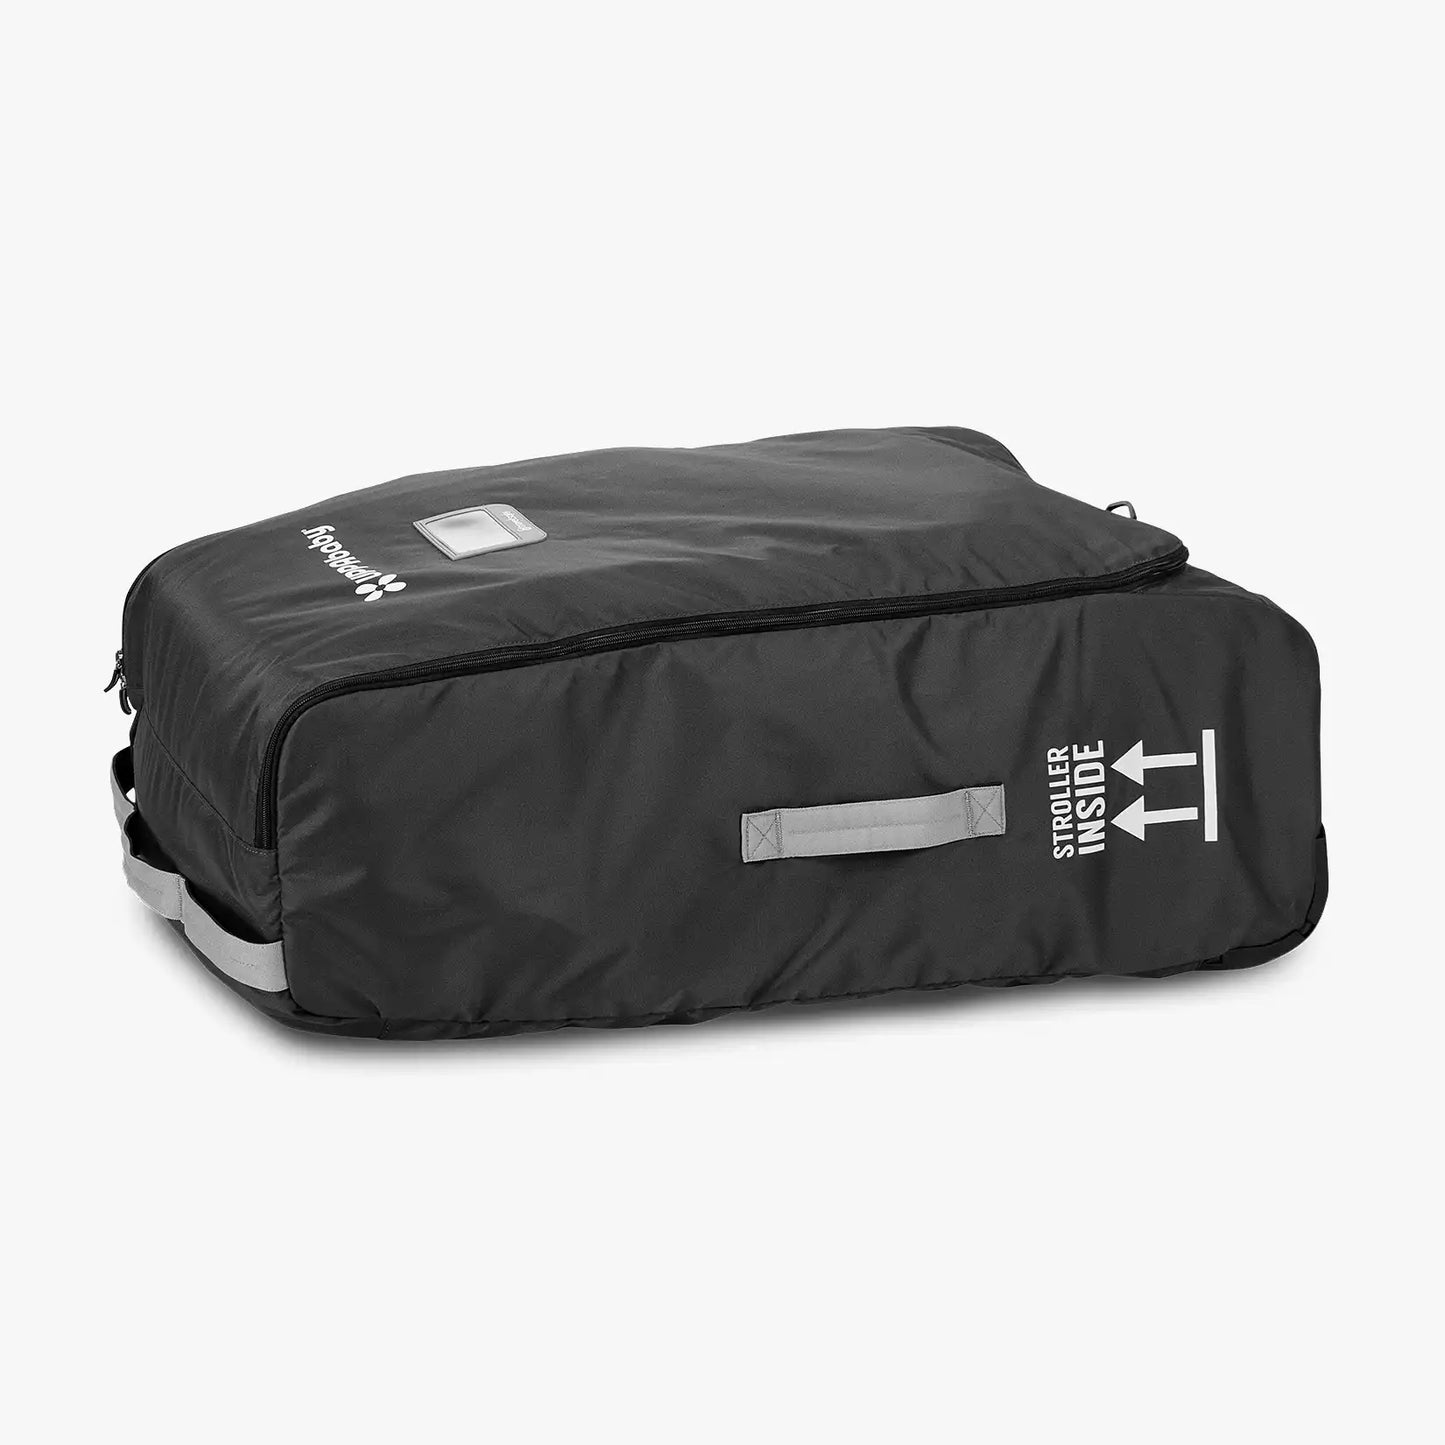 UPPAbaby Travel Bag for Vista, Vista V2, Cruz, and Cruz V2